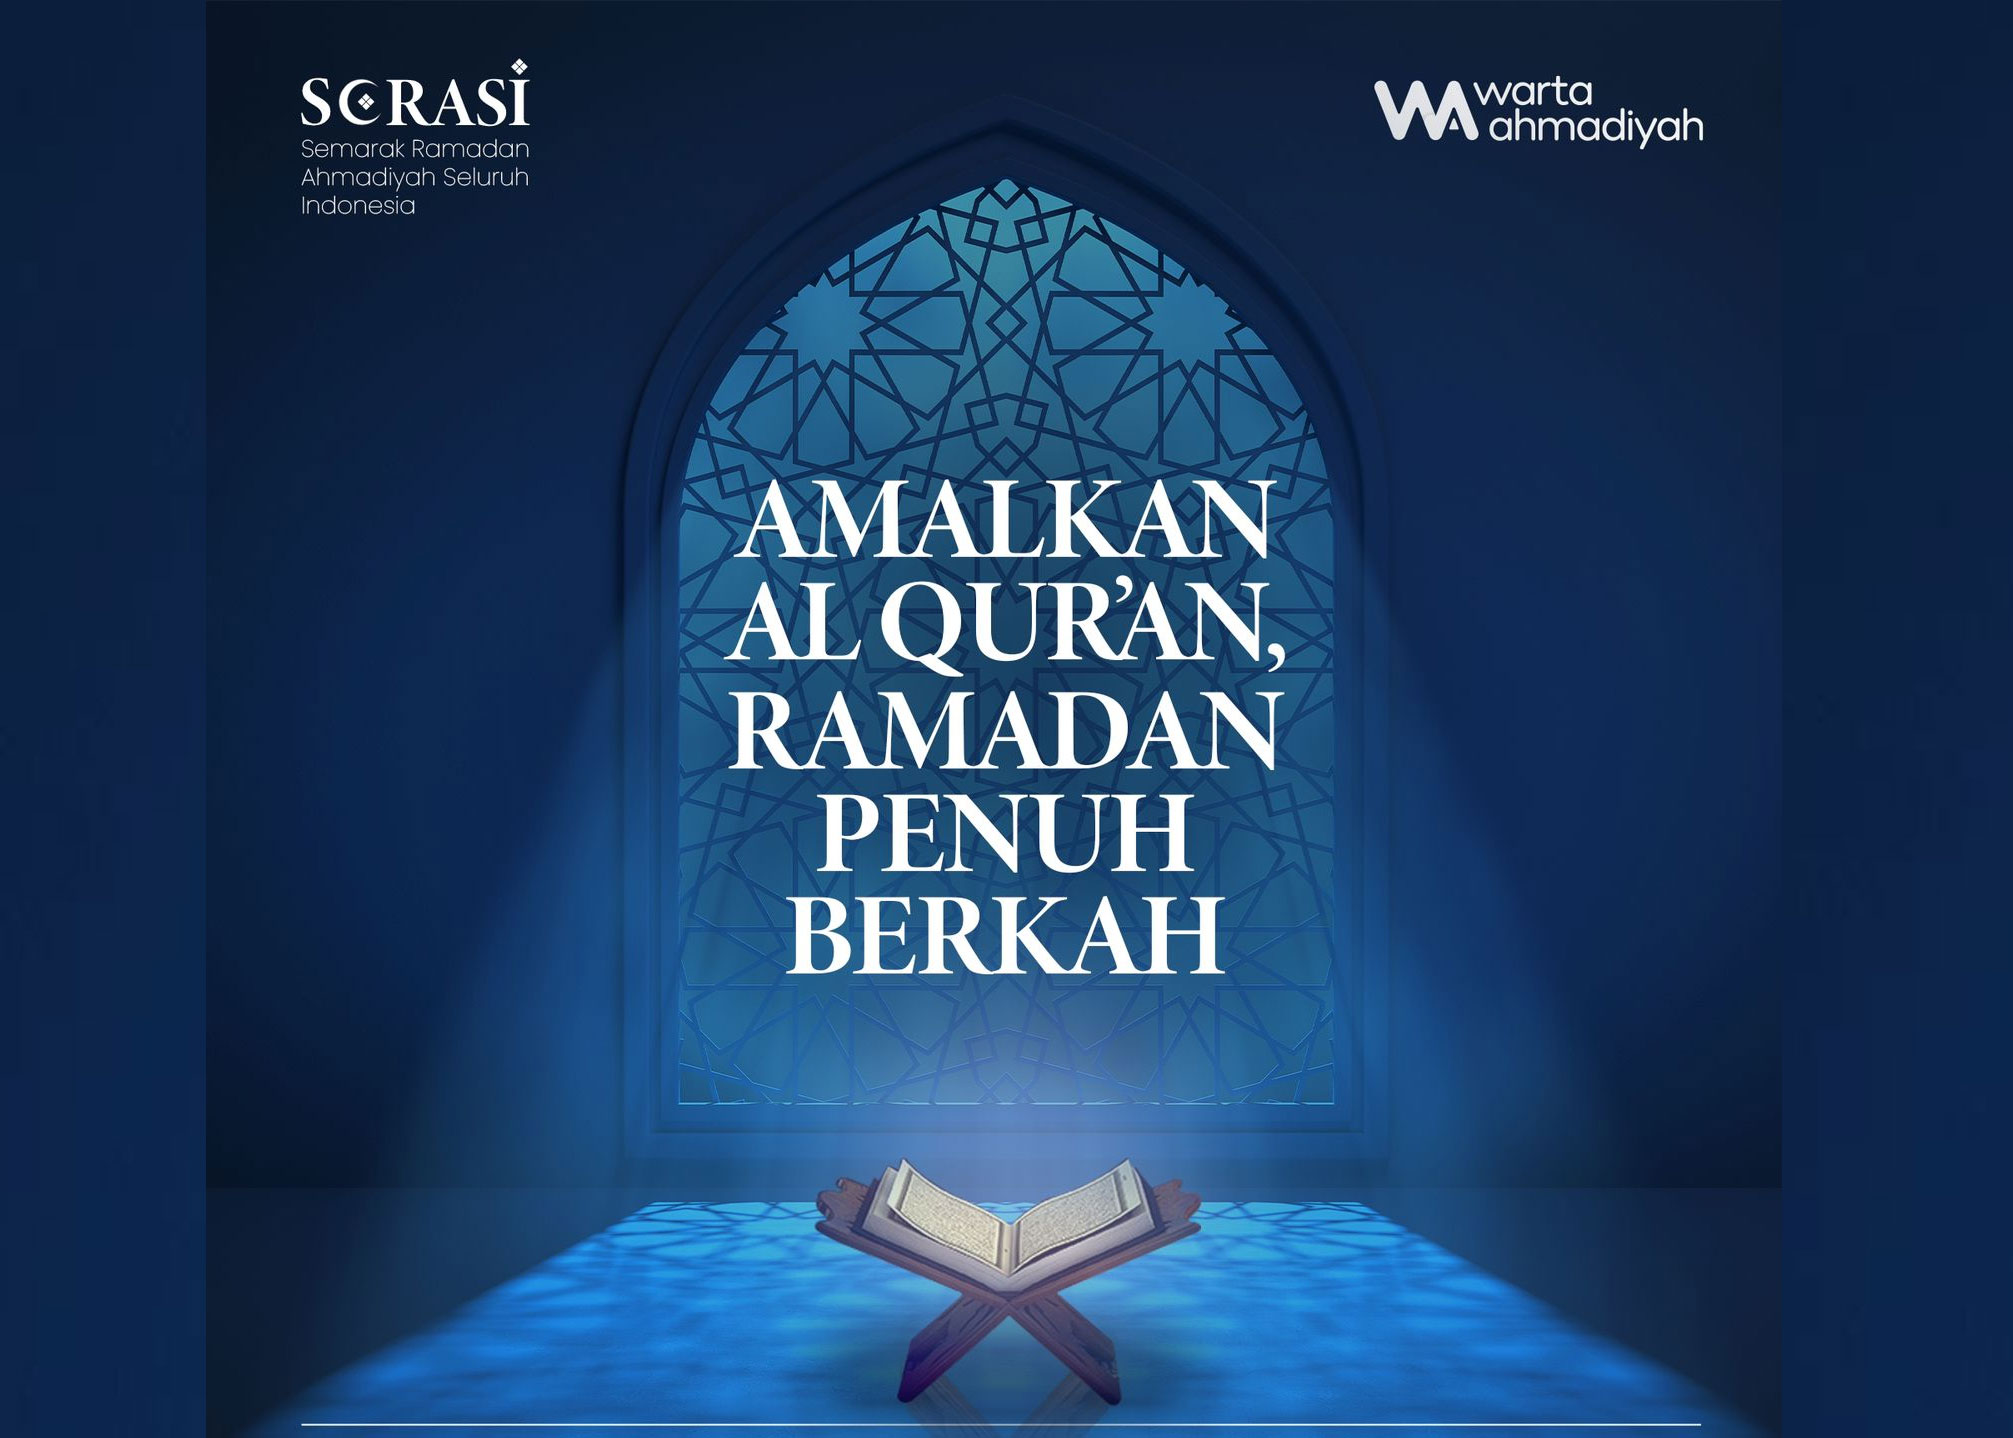 Program SERASI akan menemani rutinitas anggota Jemaat Ahmadiyah Indonesia di Ramadhan 1444 H